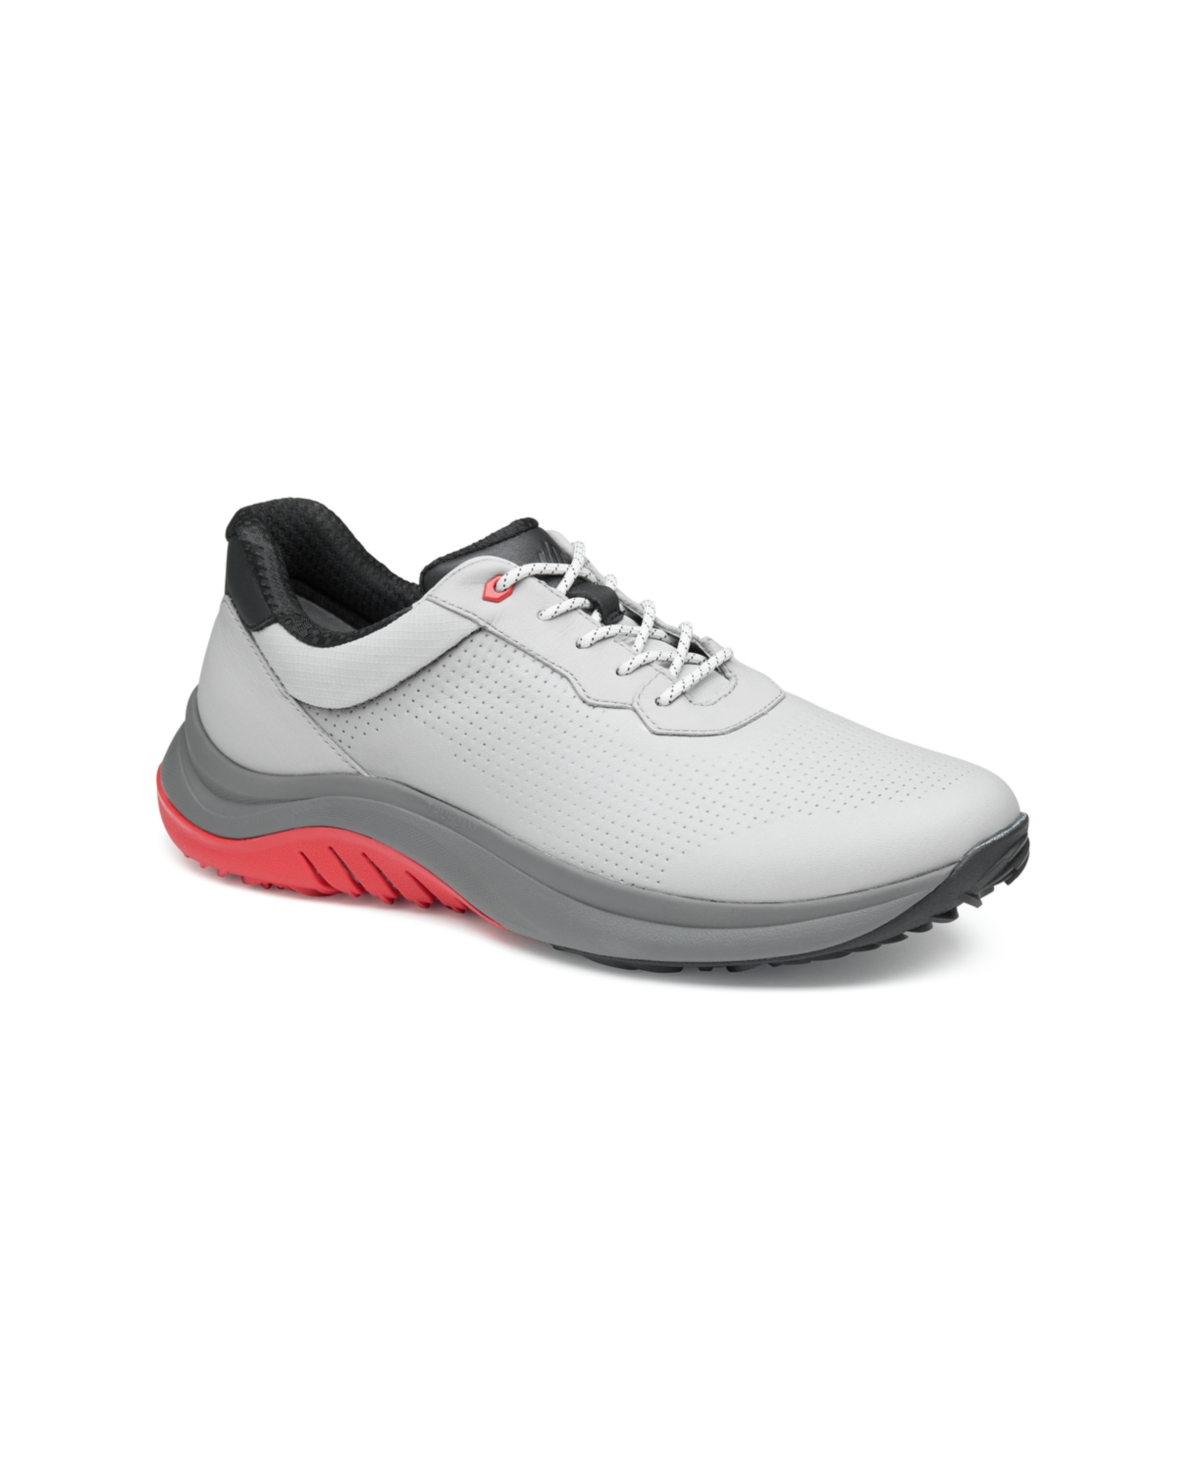 Men's HT1-Luxe Hybrid Sneakers - Light Gray